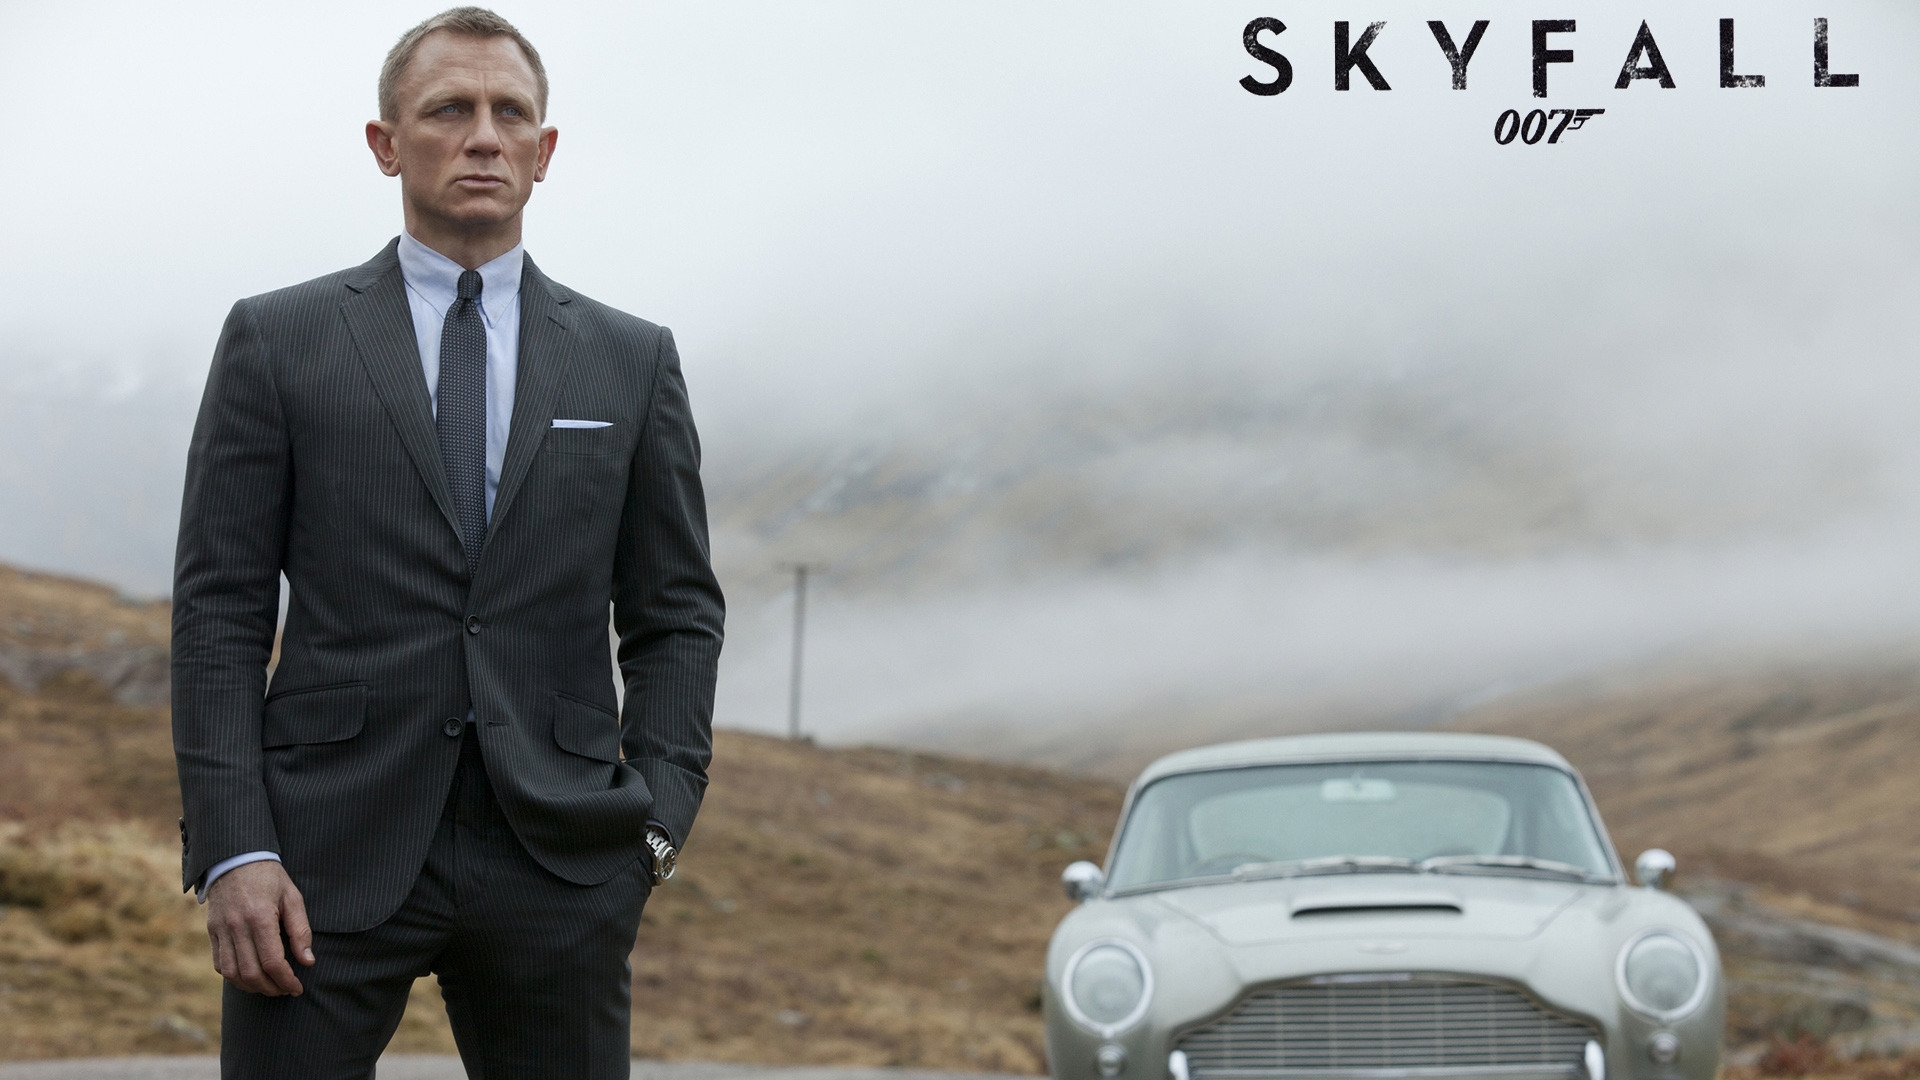 James Bond Skyfall for 1920 x 1080 HDTV 1080p resolution